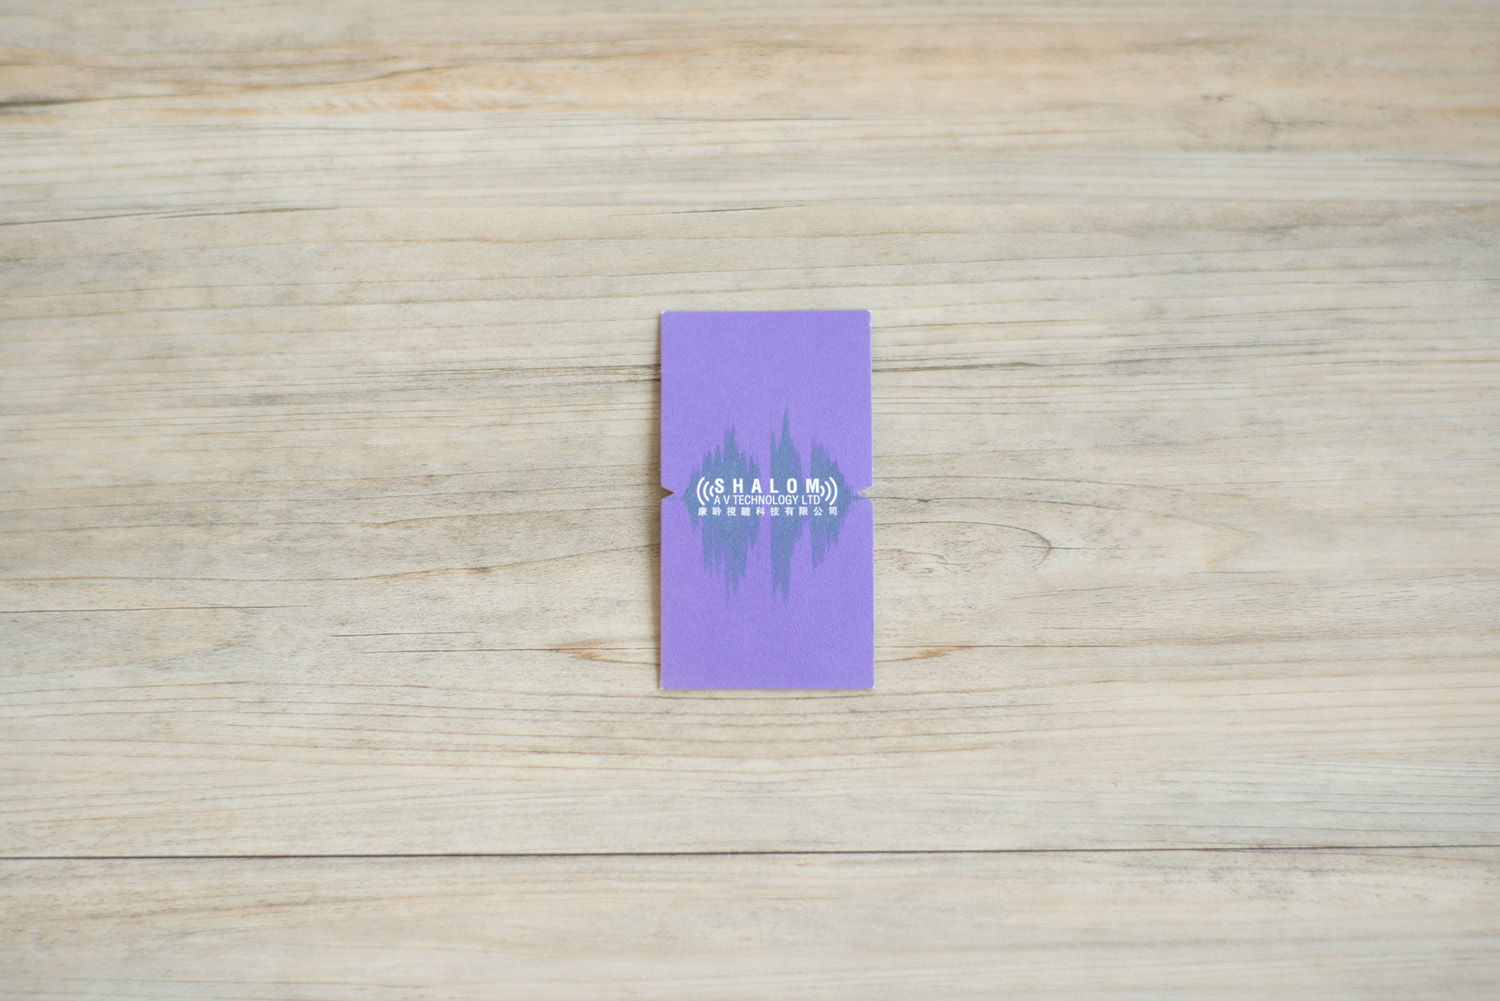 Shalom AV – Namecard design